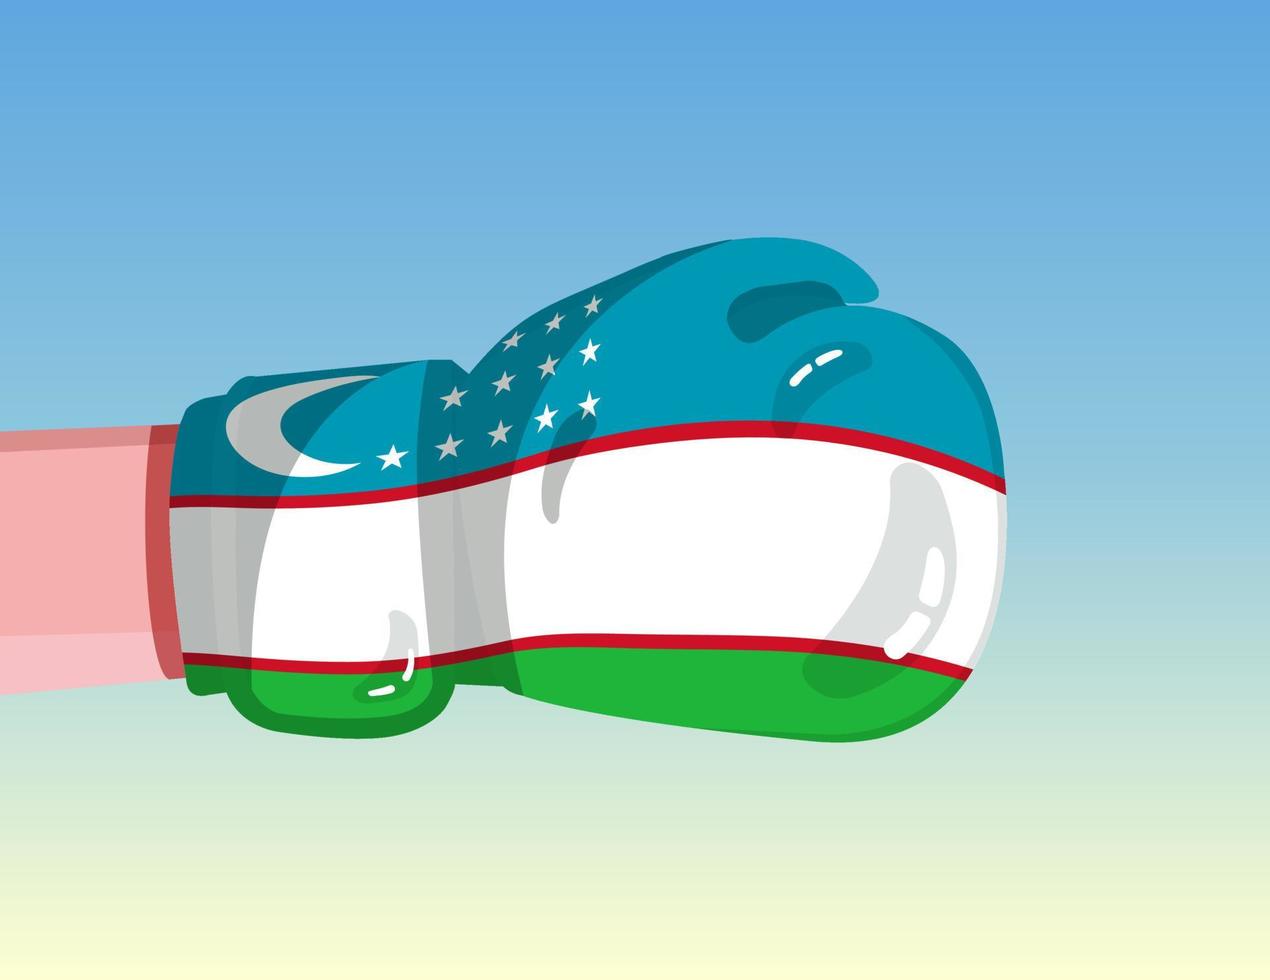 bandiera dell'uzbekistan sul guantone da boxe. confronto tra paesi con potere competitivo. atteggiamento offensivo. separazione dei poteri. design pronto per il modello. vettore